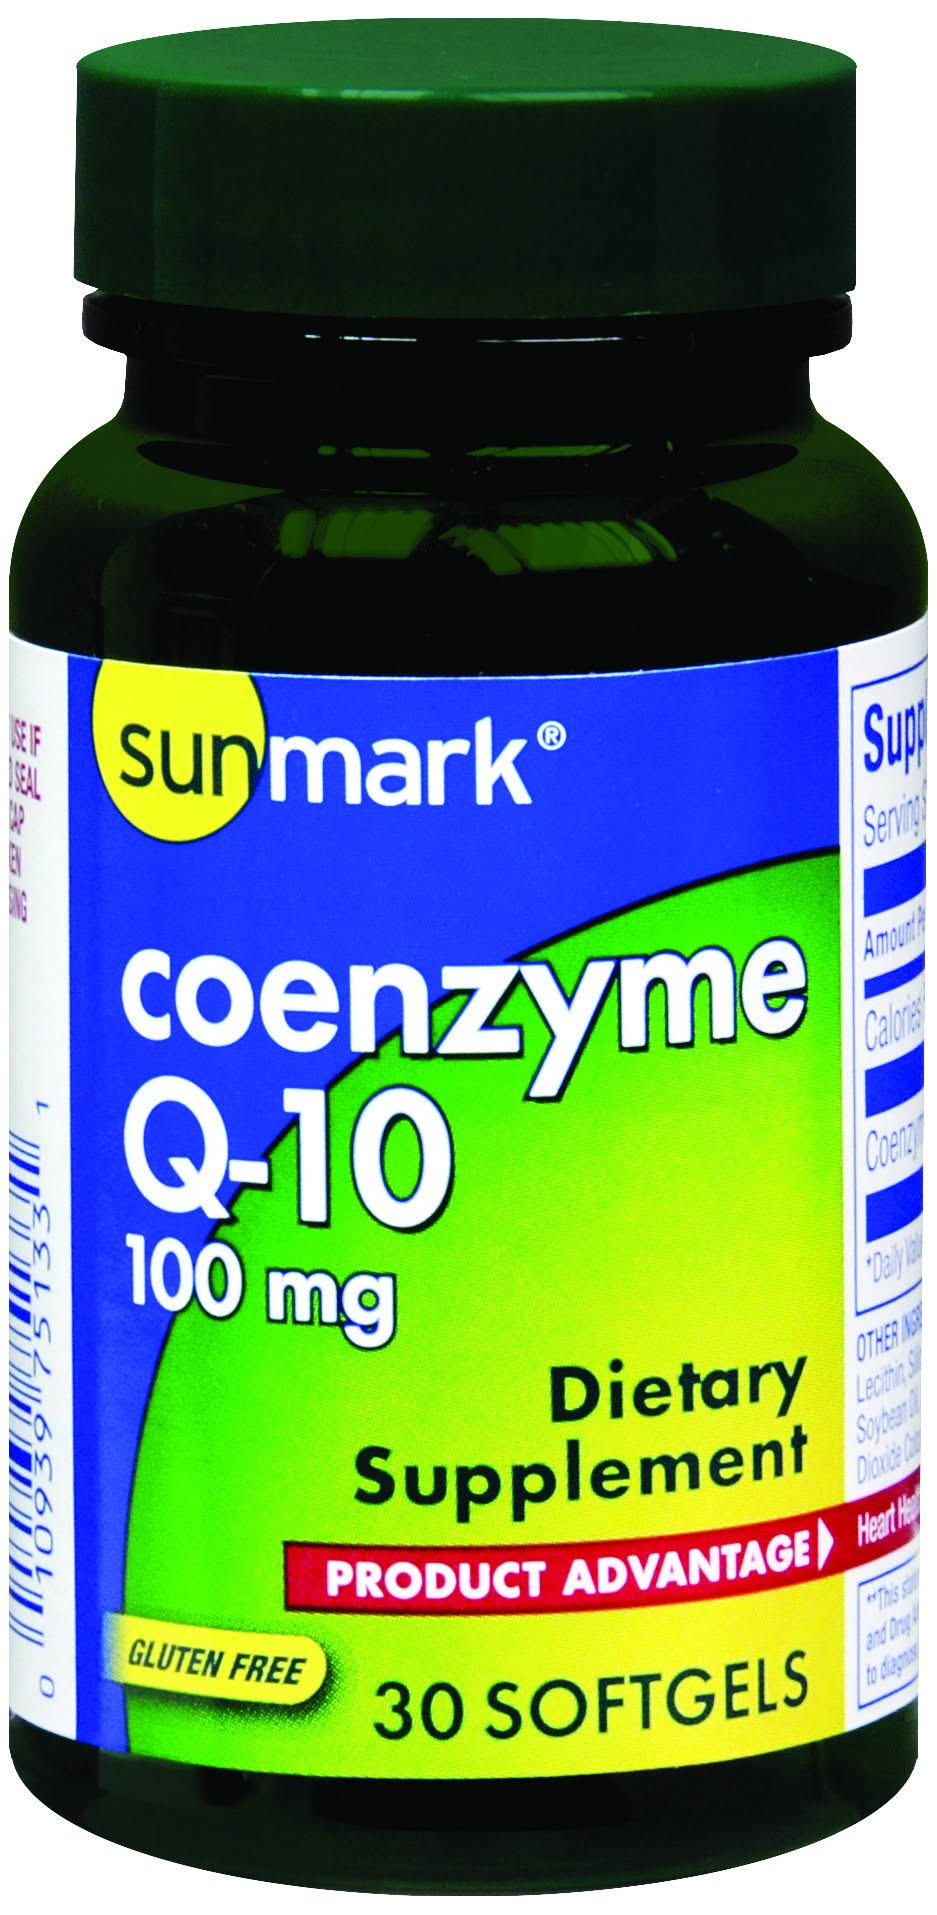 Sunmark Coenzyme Q-10 Supplement; Bottle of 30